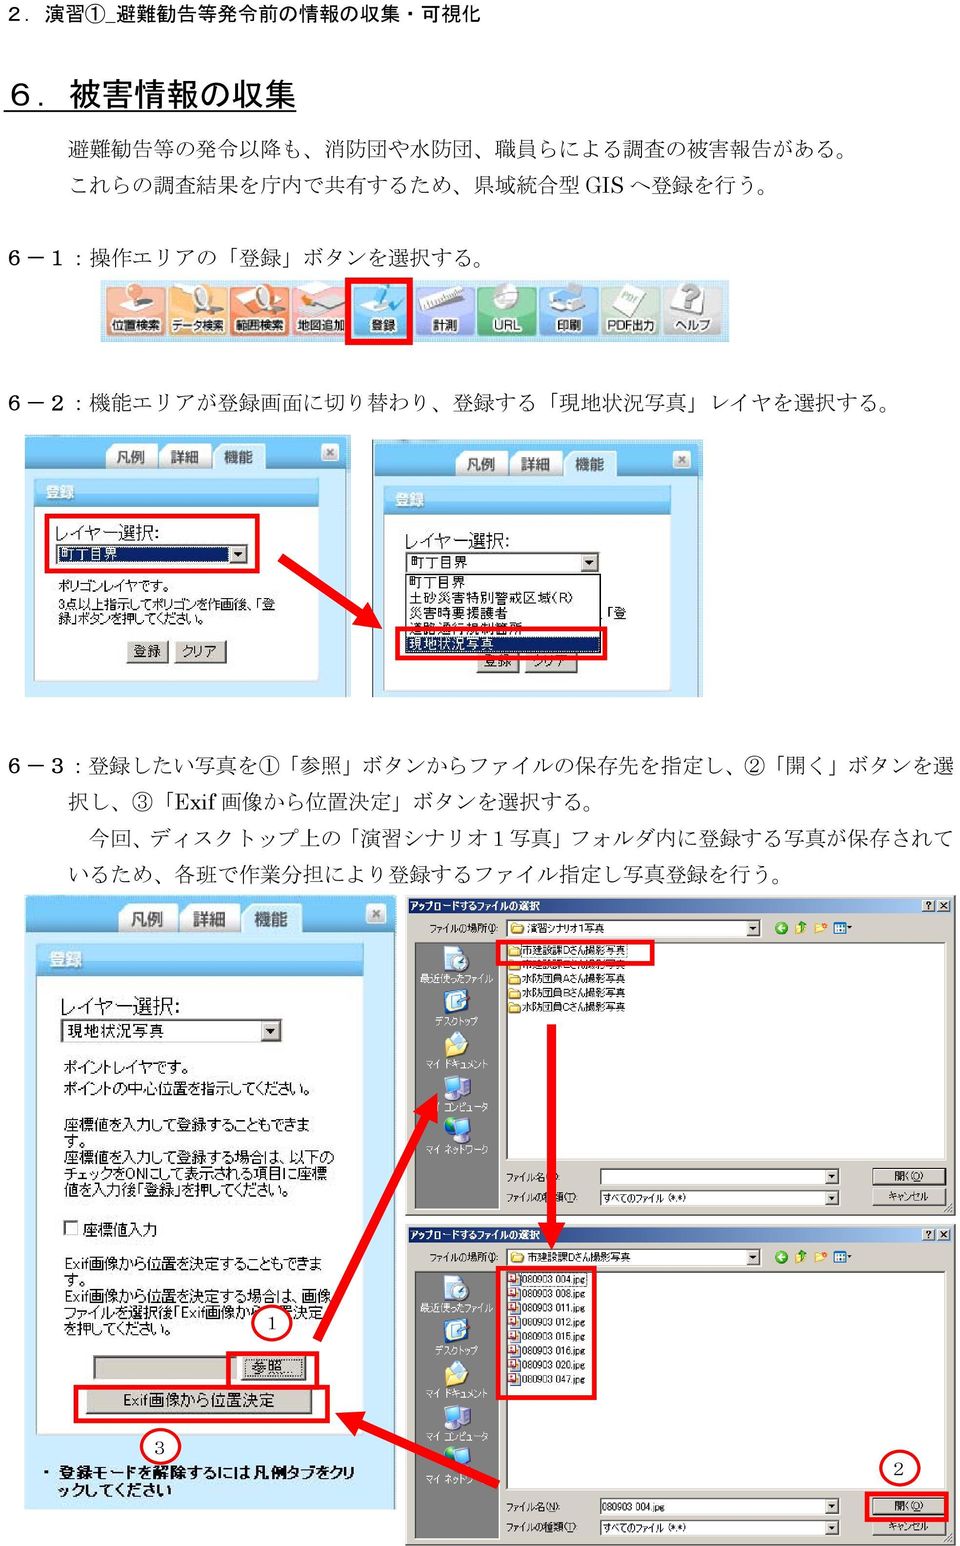 択 する 6-3: 登 録 したい 写 真 を1 参 照 ボタンからファイルの 保 存 先 を 指 定 し 2 開 く ボタンを 選 択 し 3 Exif 画 像 から 位 置 決 定 ボタンを 選 択 する 今 回